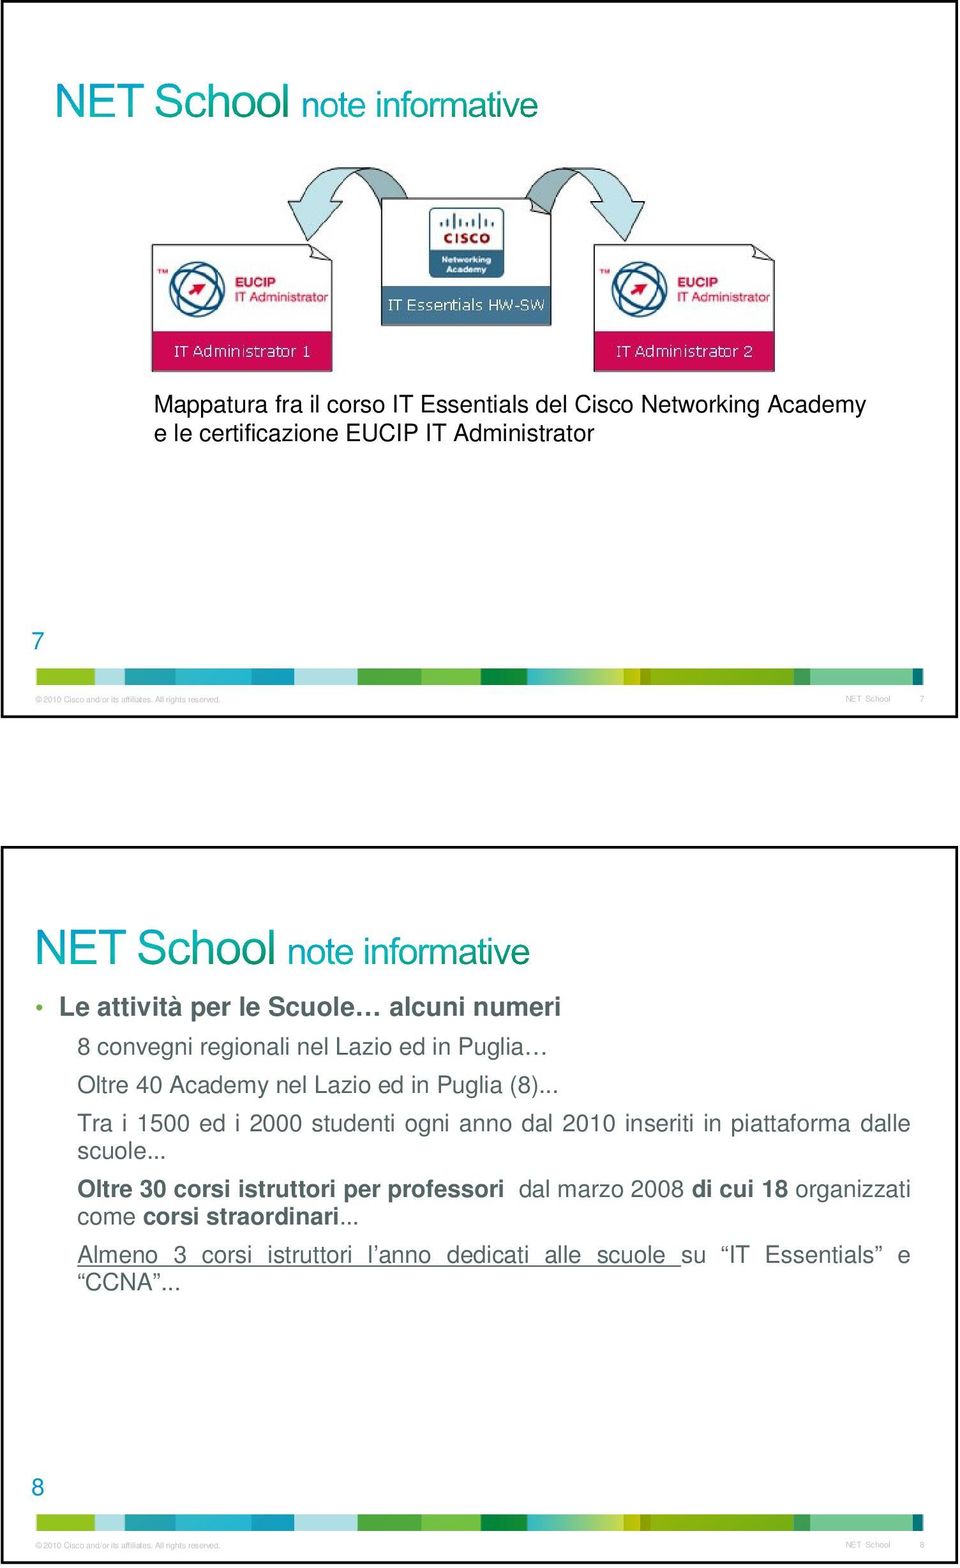 8 convegni regionali nel Lazio ed in Puglia Oltre 40 Academy nel Lazio ed in Puglia (8).